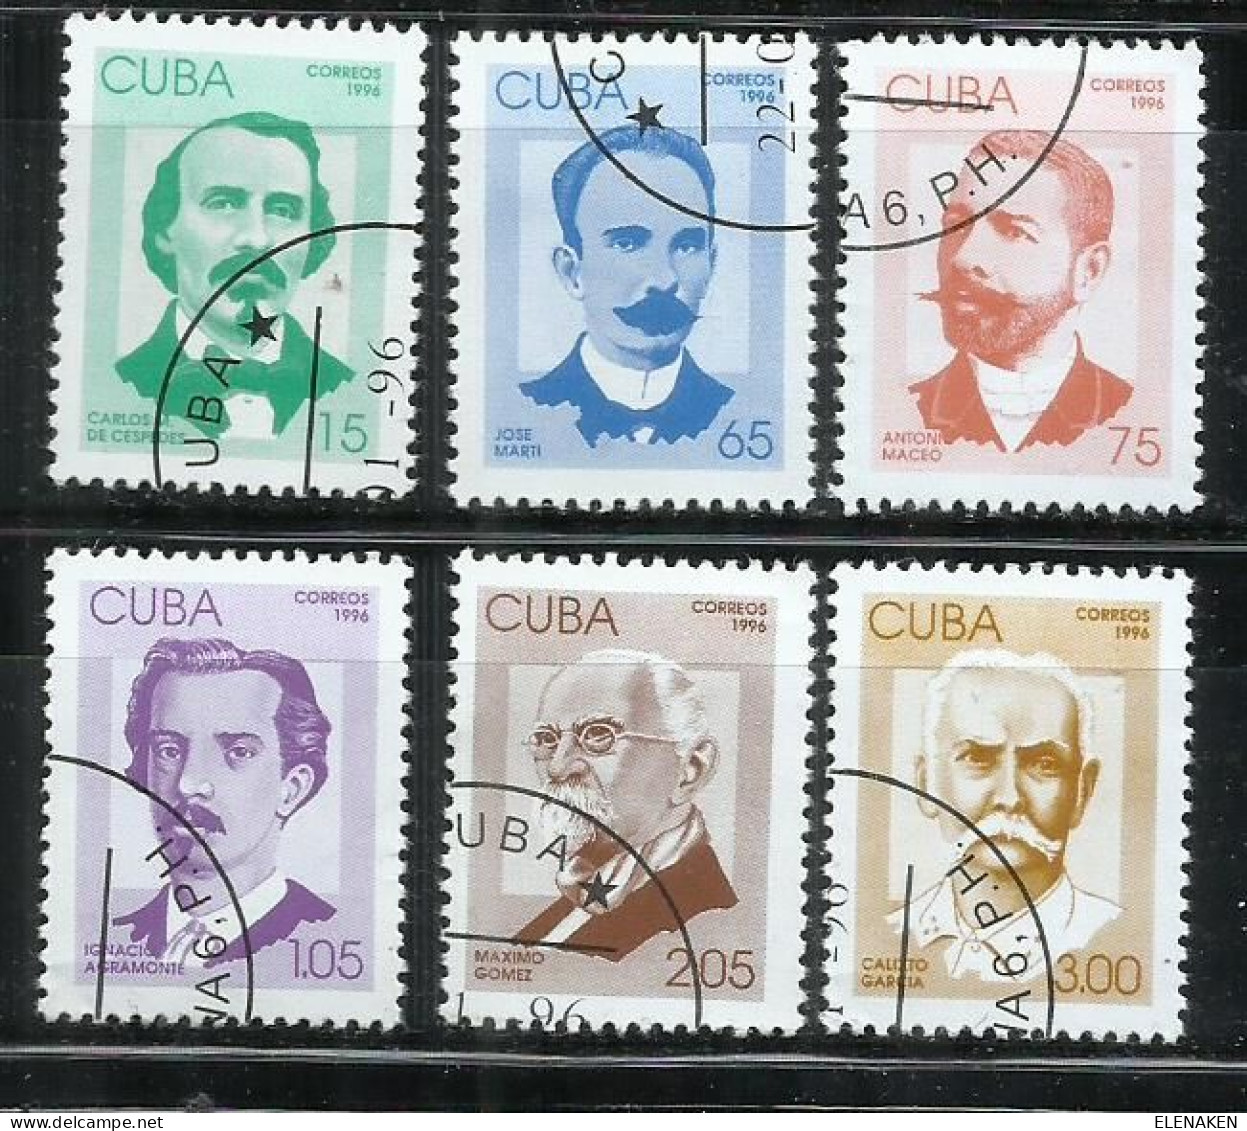 8530I-SERIE COMPLETA CUBA PATRIOTAS CUBANOS 1996 Nº 3504/3509 VALOR 12,00€ - Used Stamps